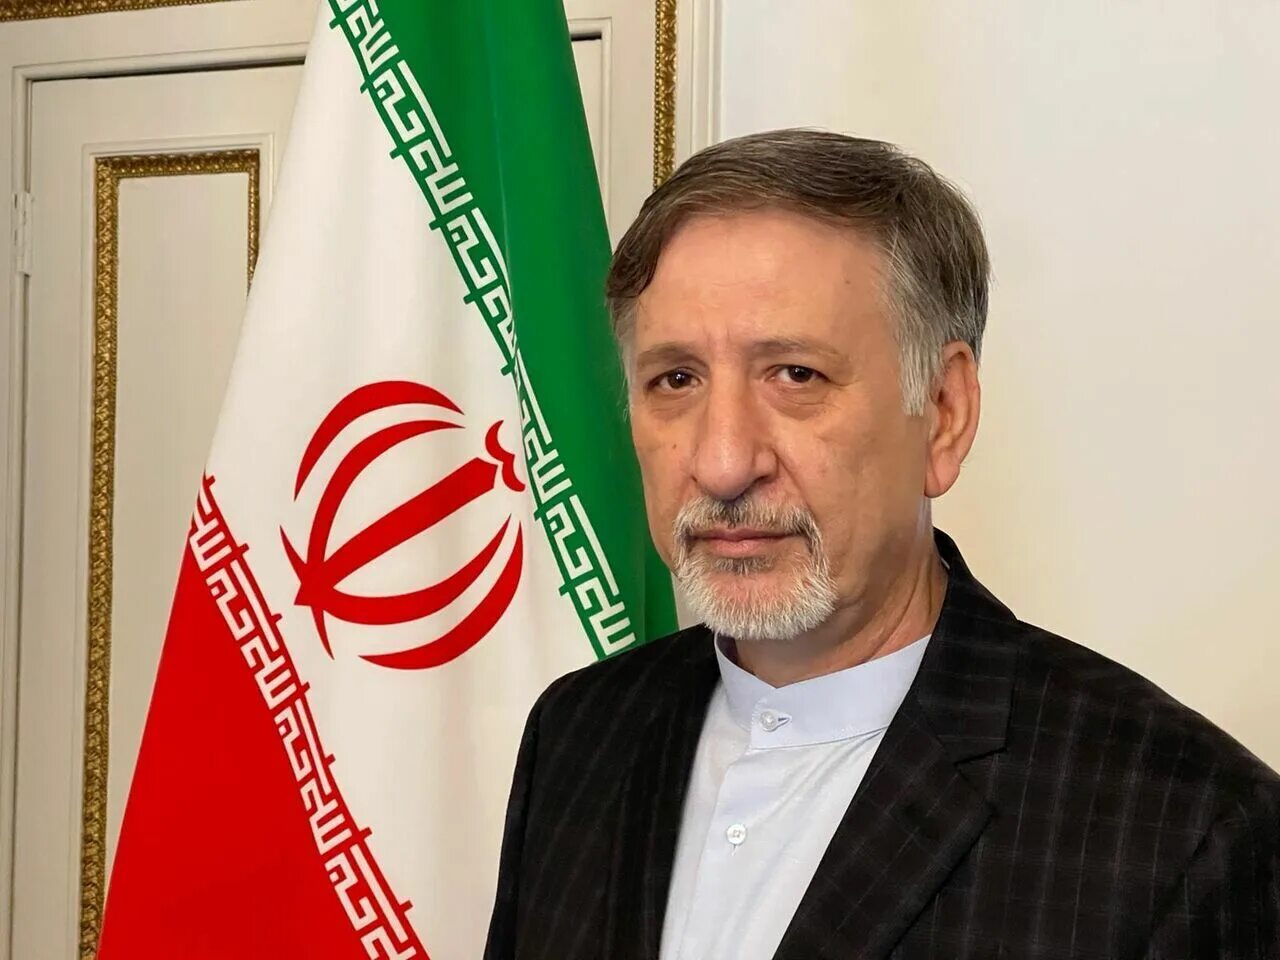 – Посол Ирана в Анкаре. Посол Ирана в кр. Дедов посол в Иране.